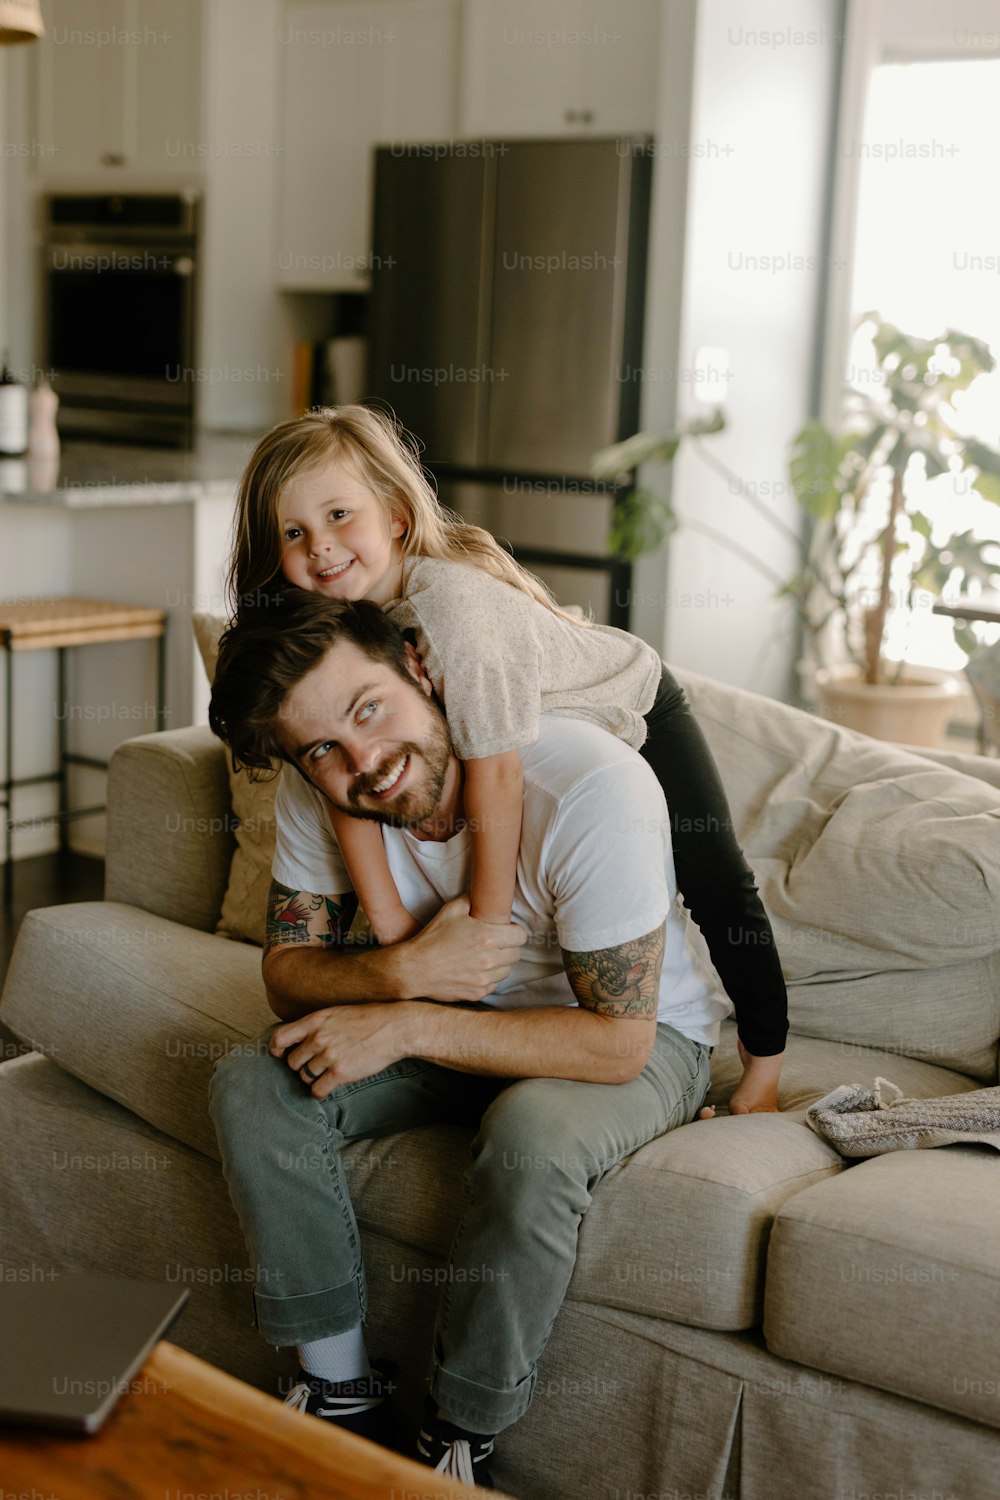 Un hombre sentado en un sofá sosteniendo a una niña